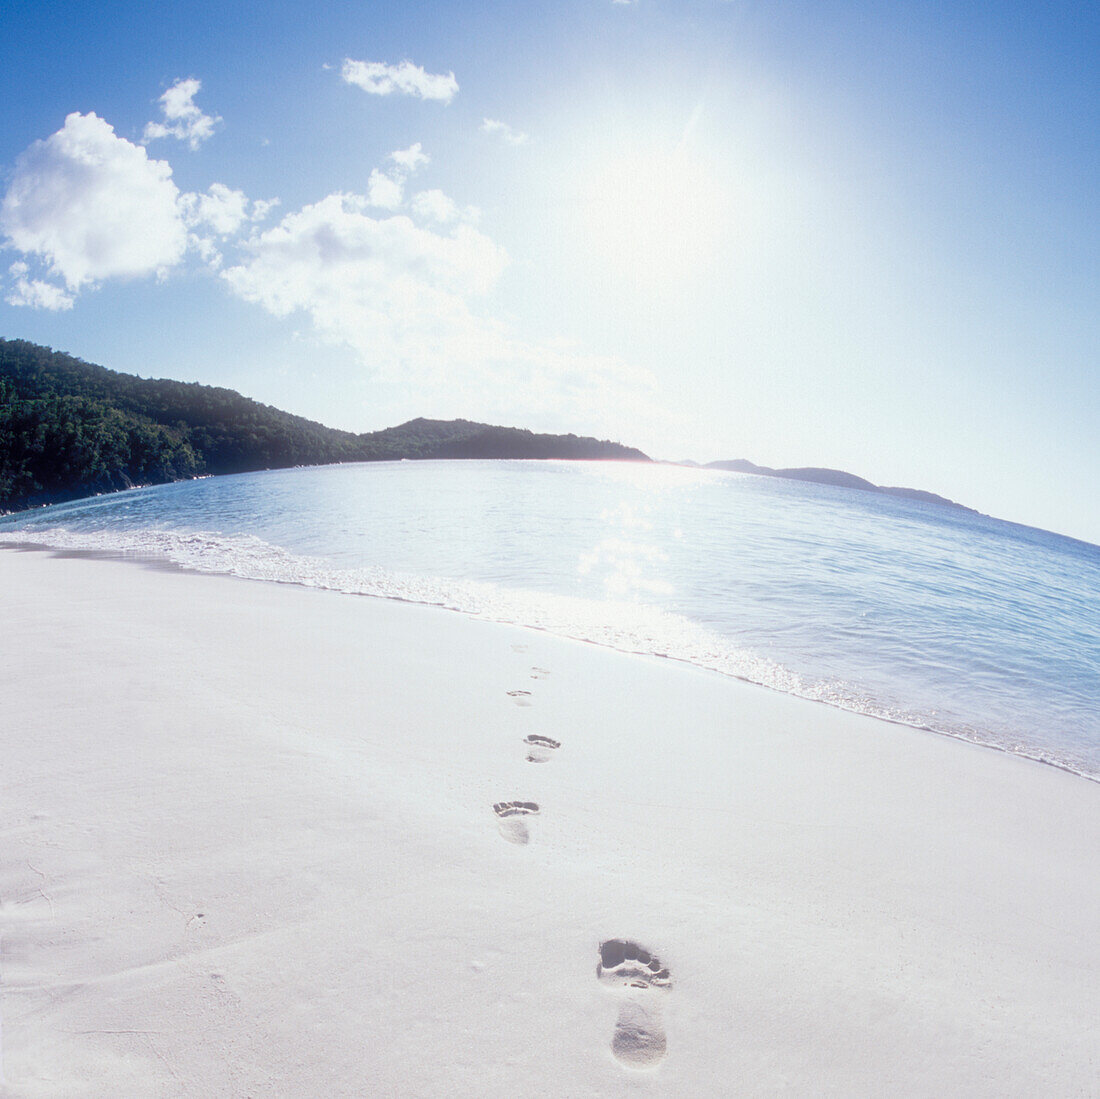 USA, Amerikanische Jungferninseln, St. John, Fußabdrücke auf leerem Strand und ruhiger See